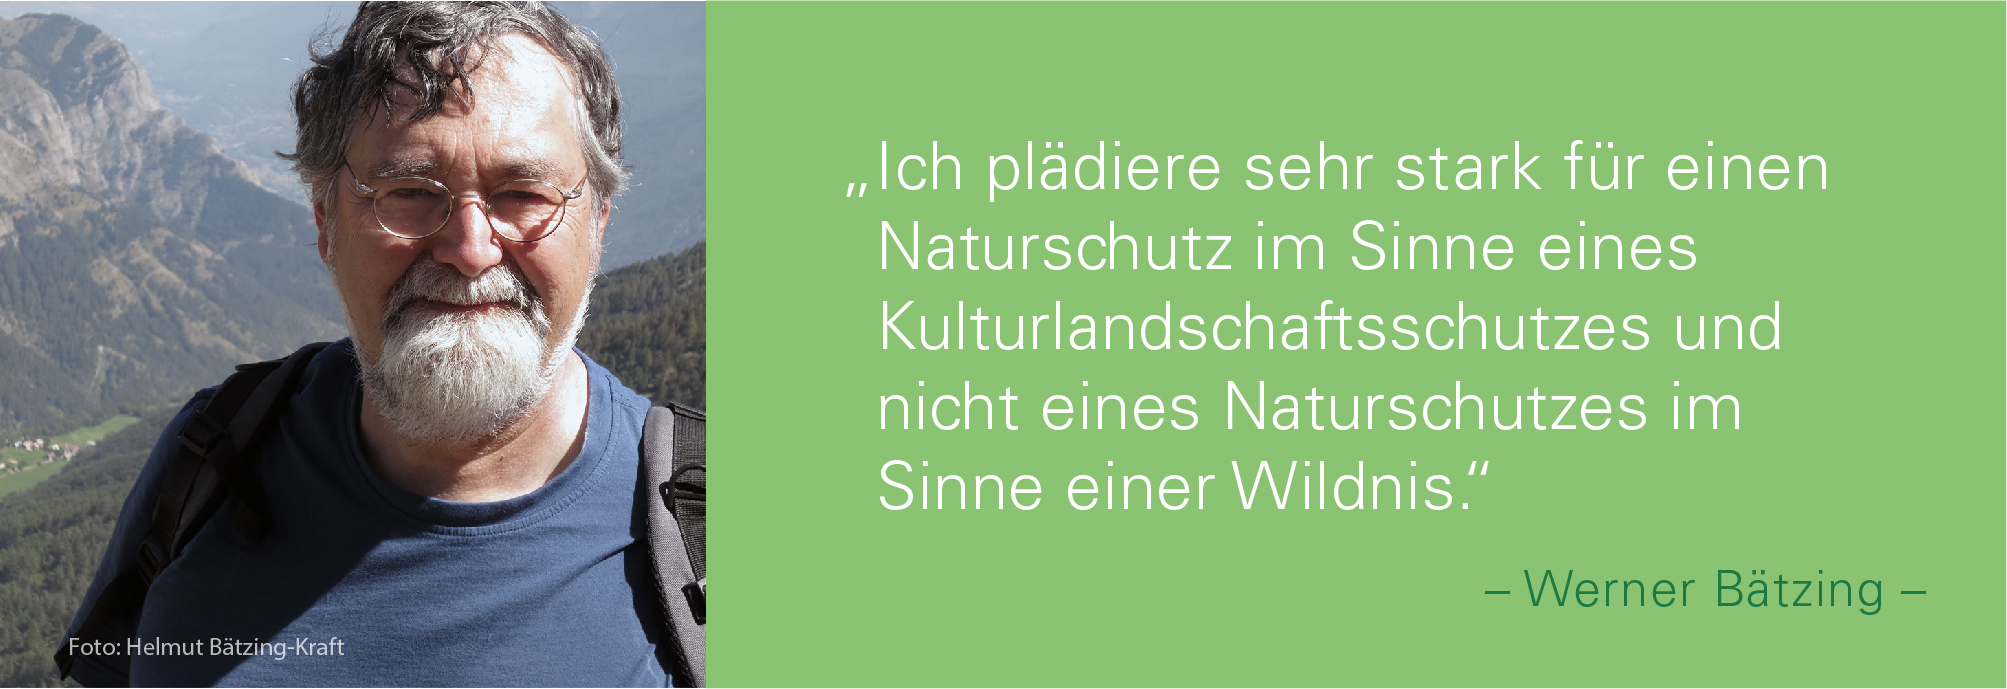 Porträtbild von Werner Bätzing mit Bergpanorama im Hintergrund mit dem Zitat: ich plädiere sehr stark für einen Naturschutz im Sinne eines Kulturlandschaftsschutzes und nicht eines Naturschutzes im Sinne einer Wildnis.